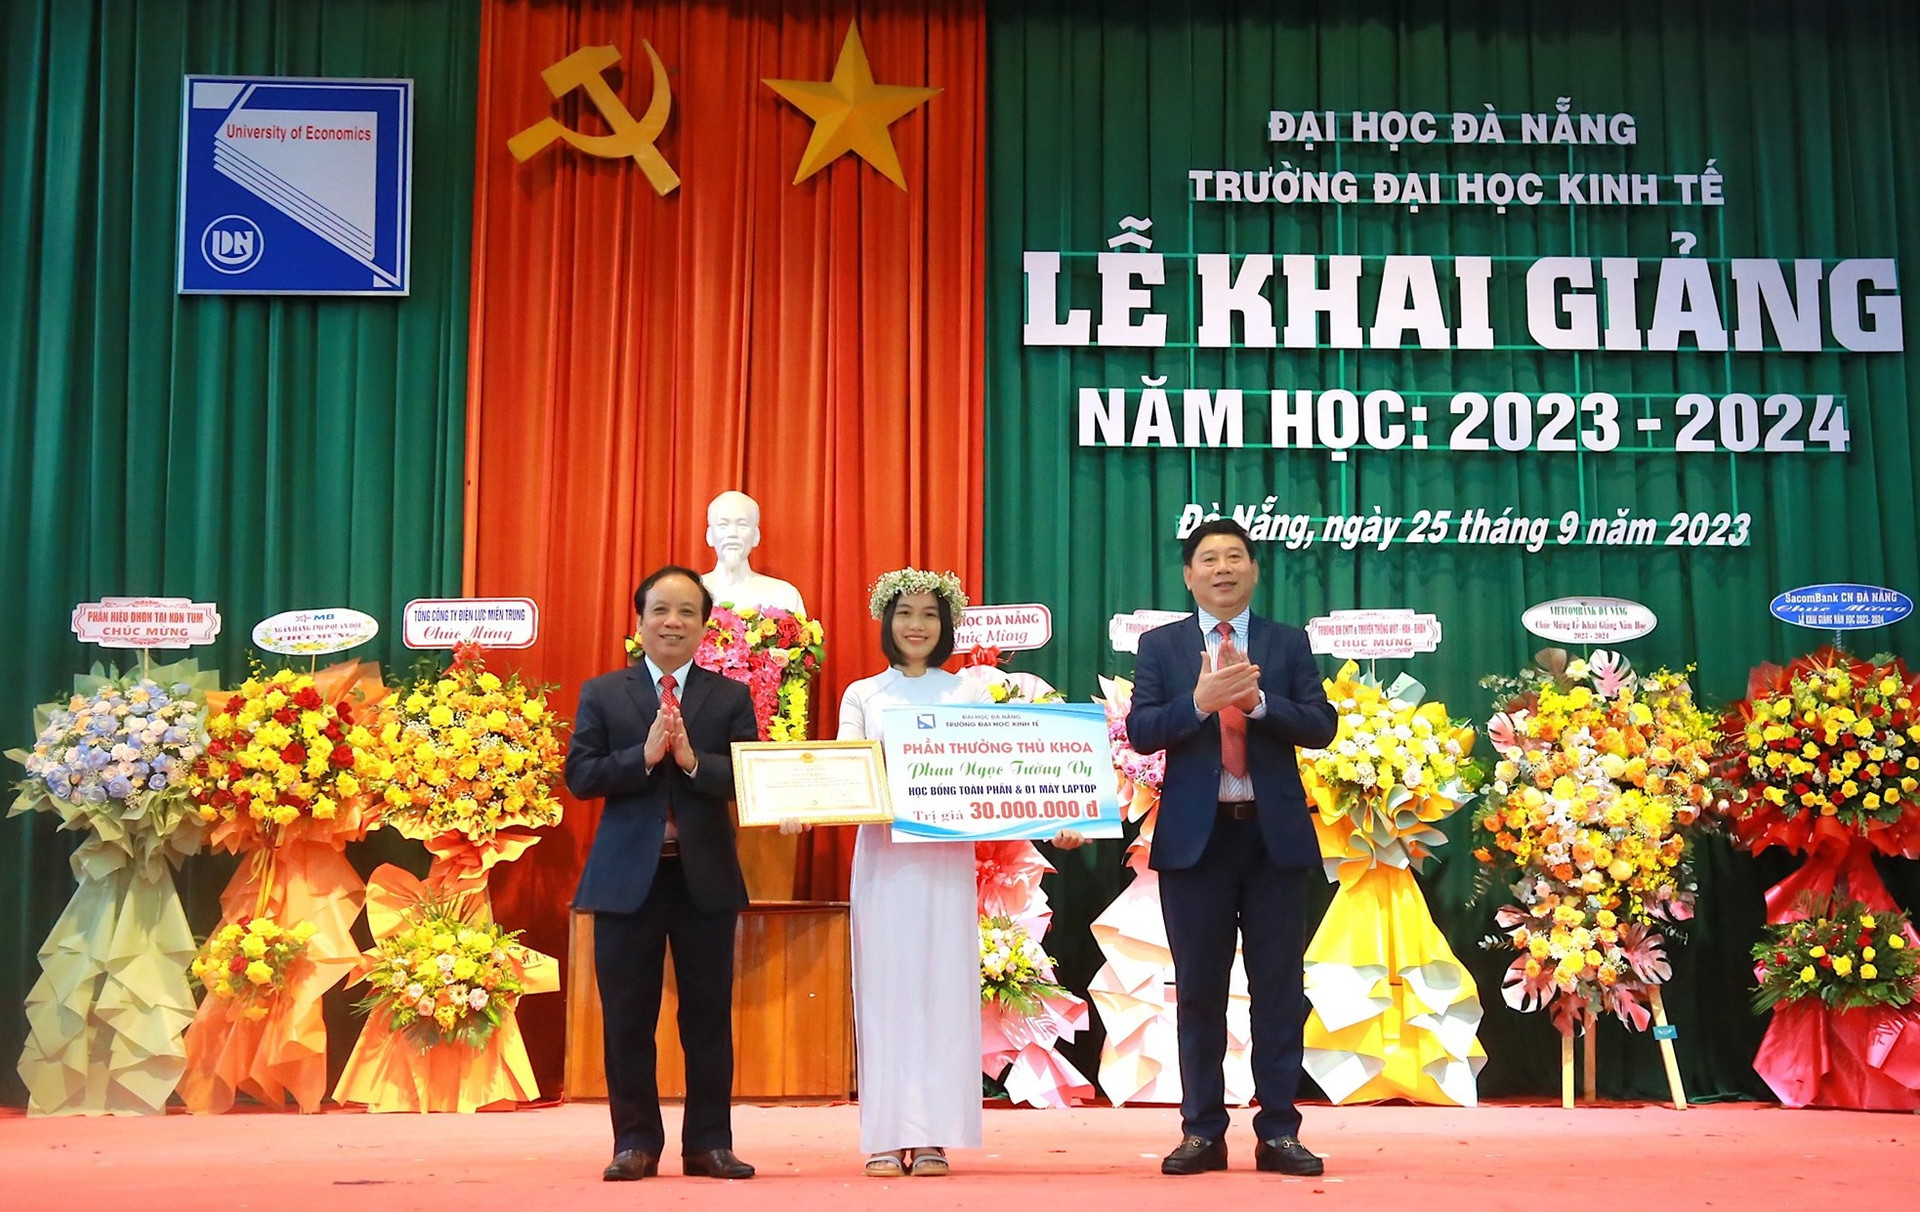 Lãnh đạo Đại học Đà Nẵng và lãnh đạo nhà trường vinh danh SV Phan Ngọc Tường Vy - Thủ khoa kỳ tuyển sinh 2023. Ảnh THU CÚC